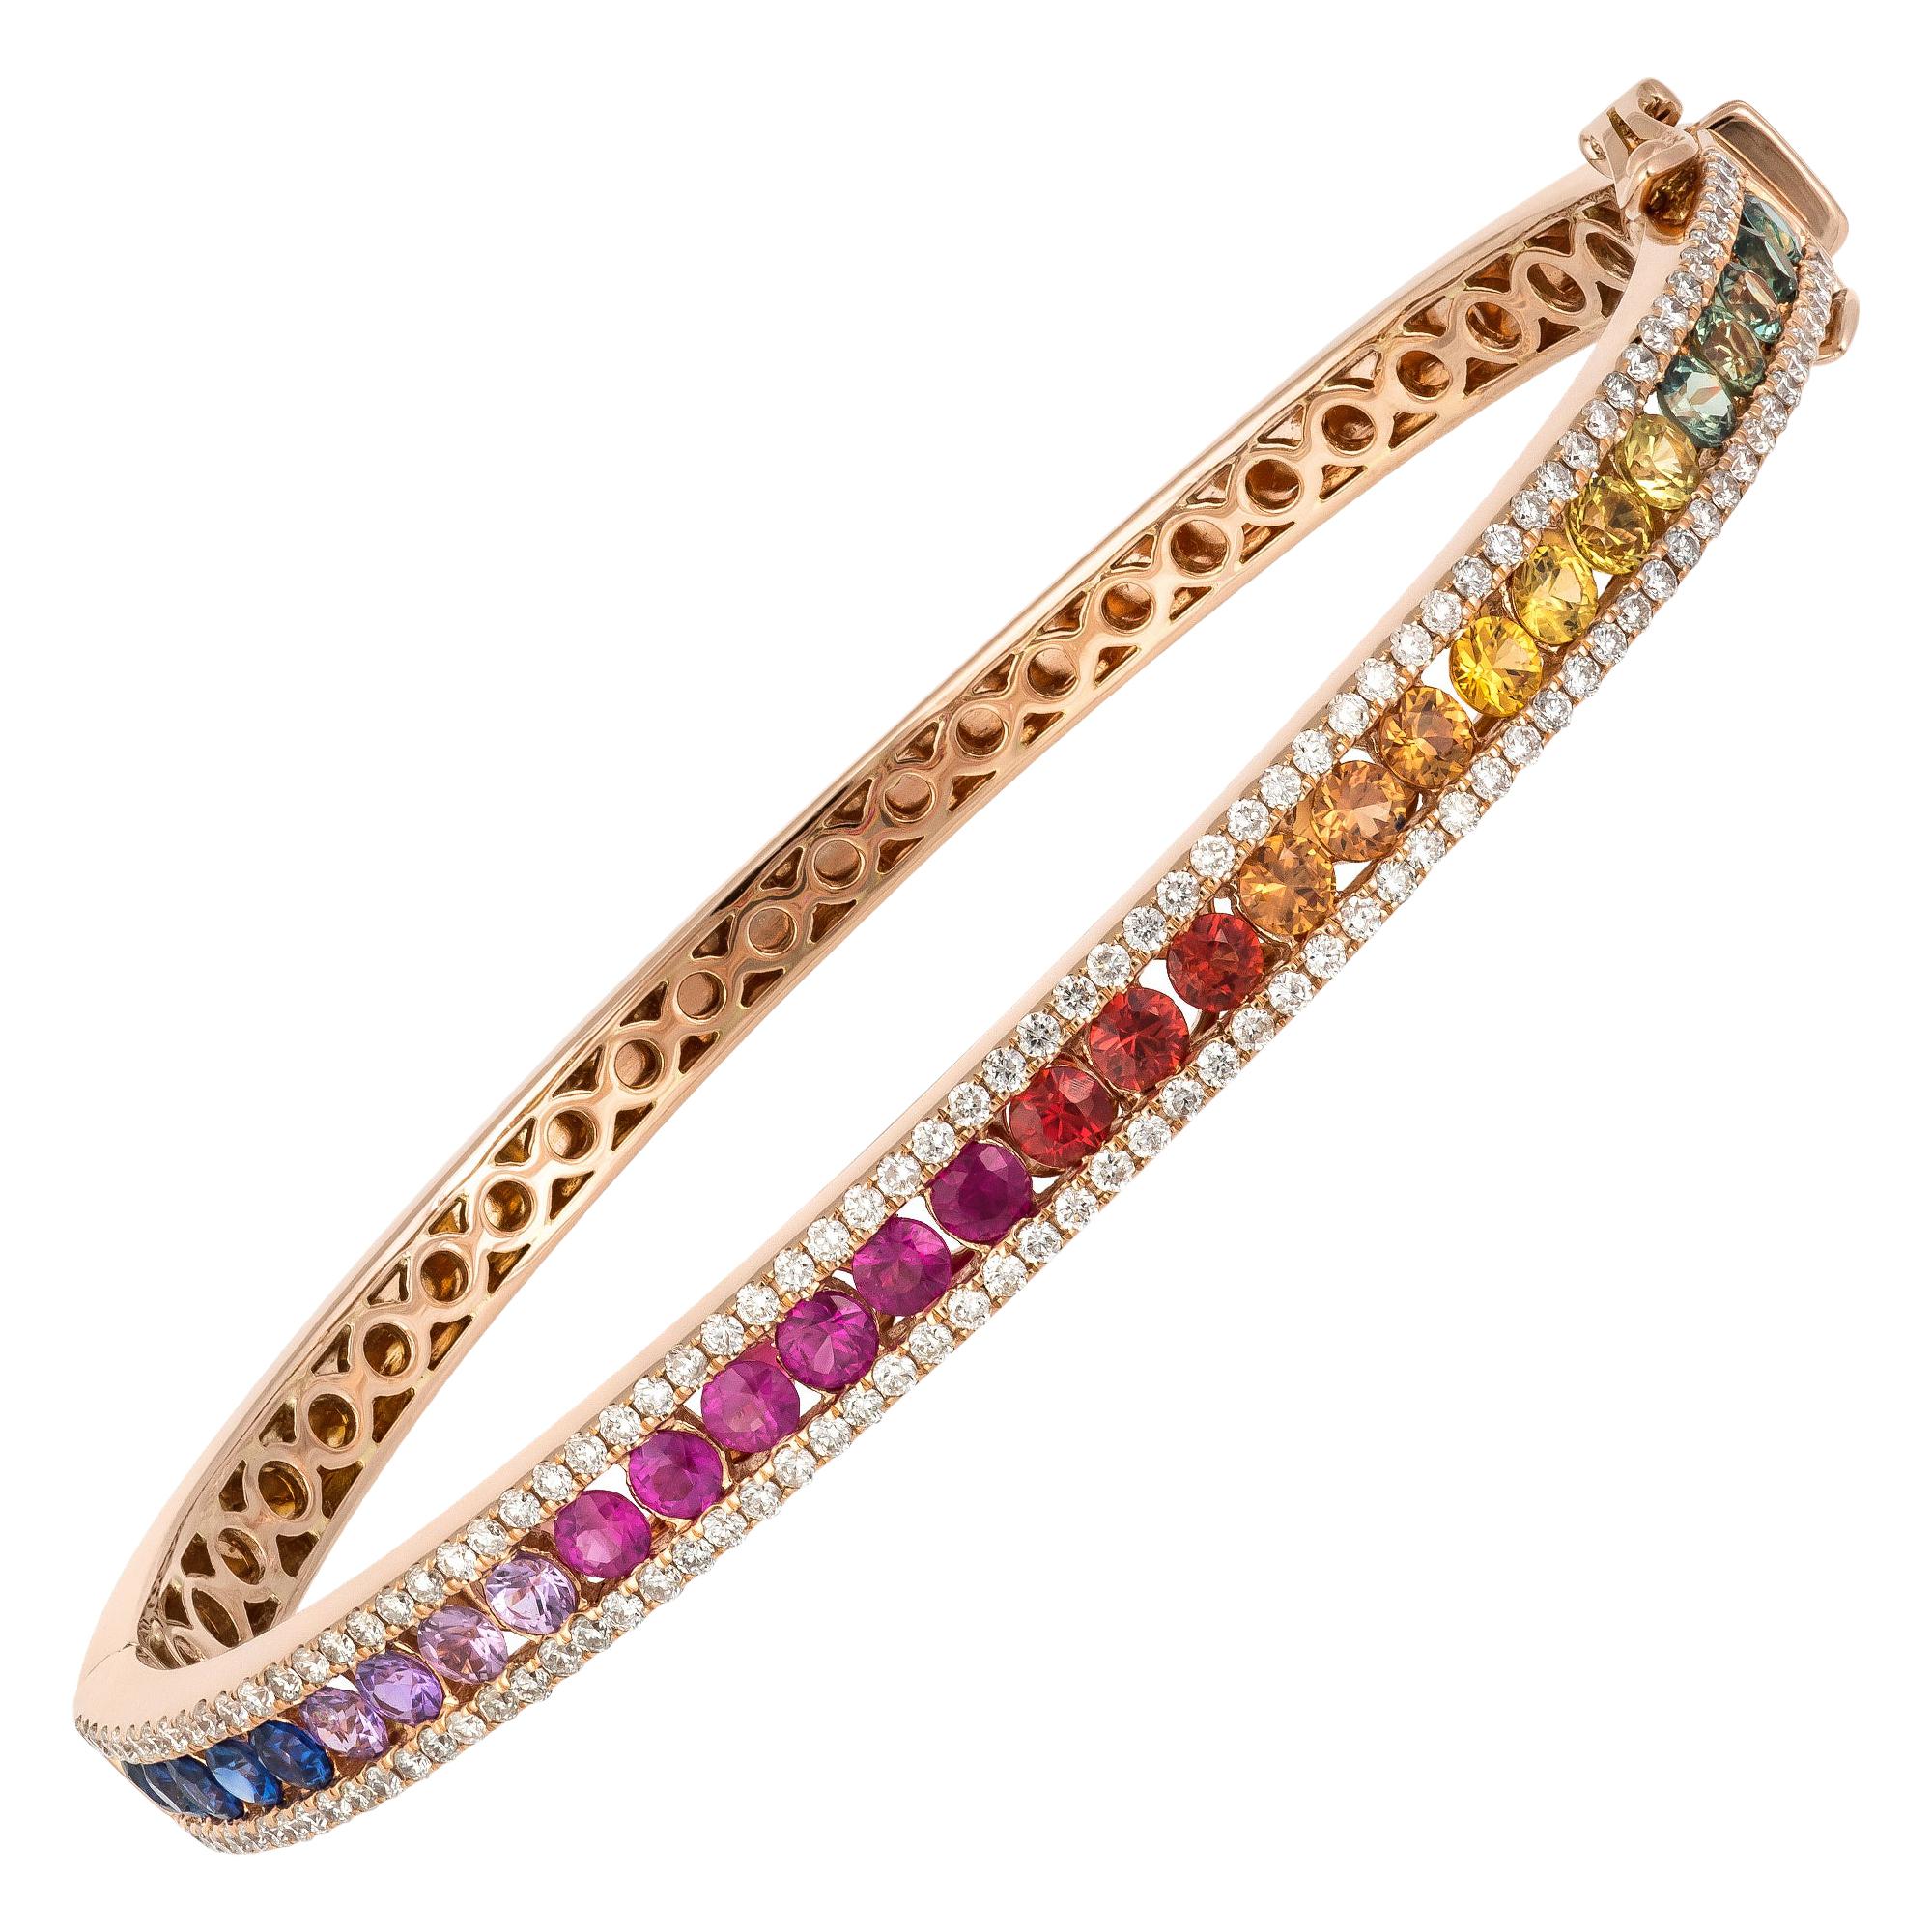 Diamond Tennis Bangle Bracelet 18K Rose Gold Diamond 0.78 Carat/130 Pieces Multi For Sale